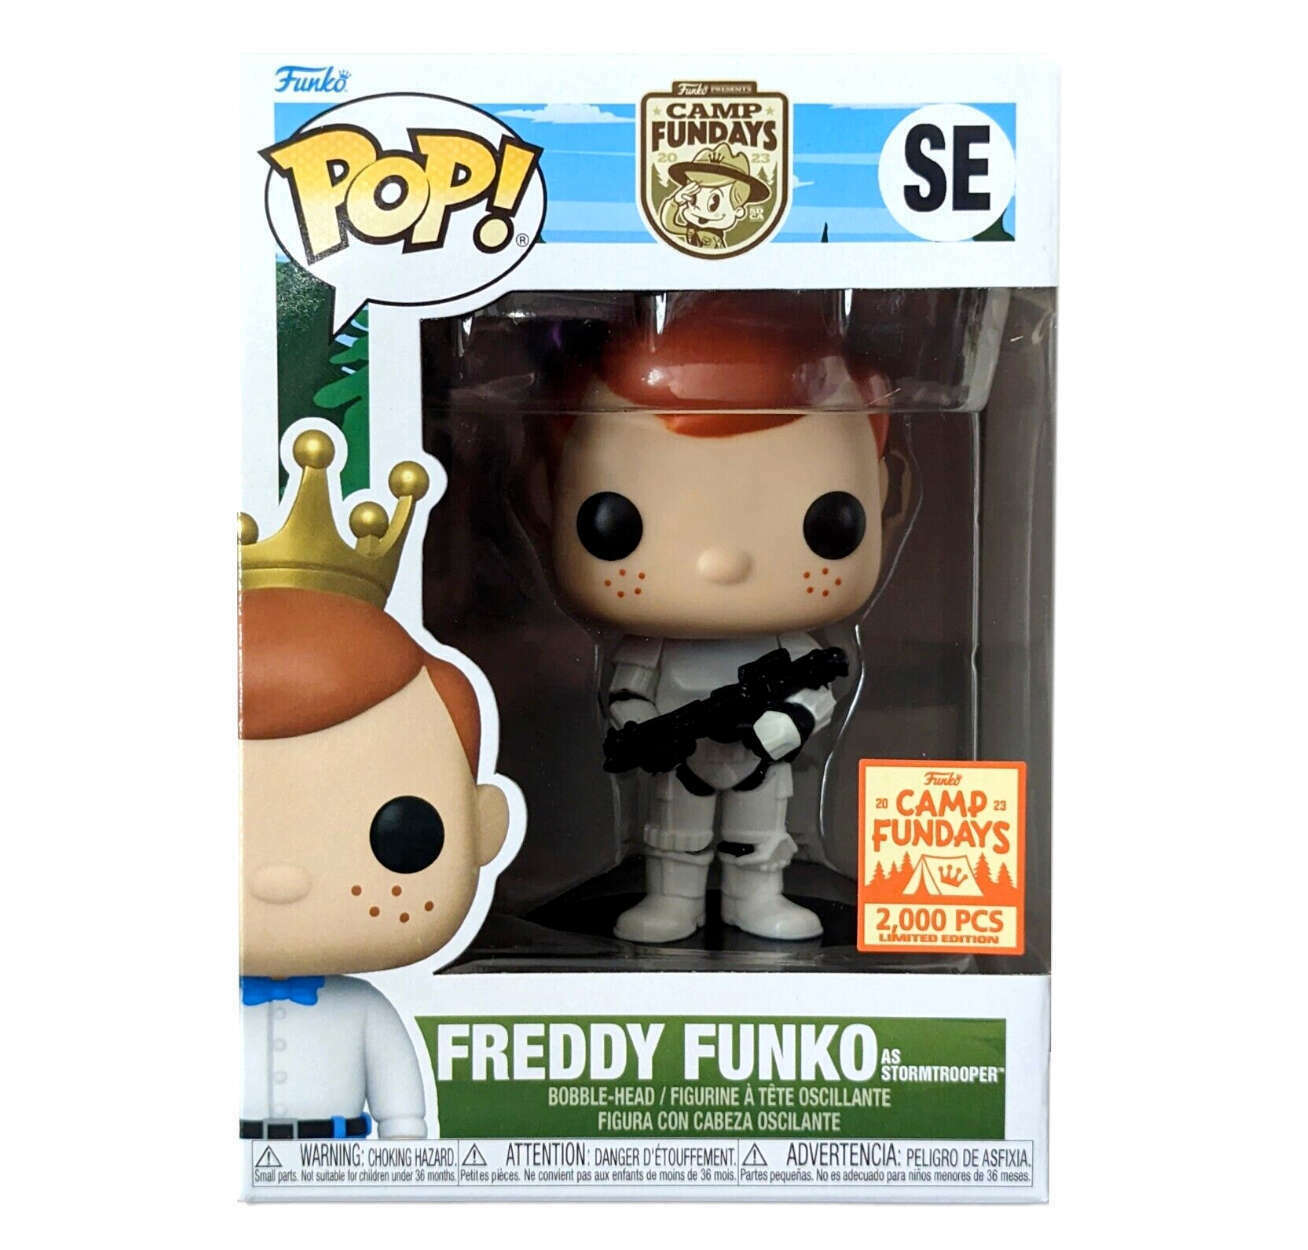 Freddy Funko as Stormtrooper